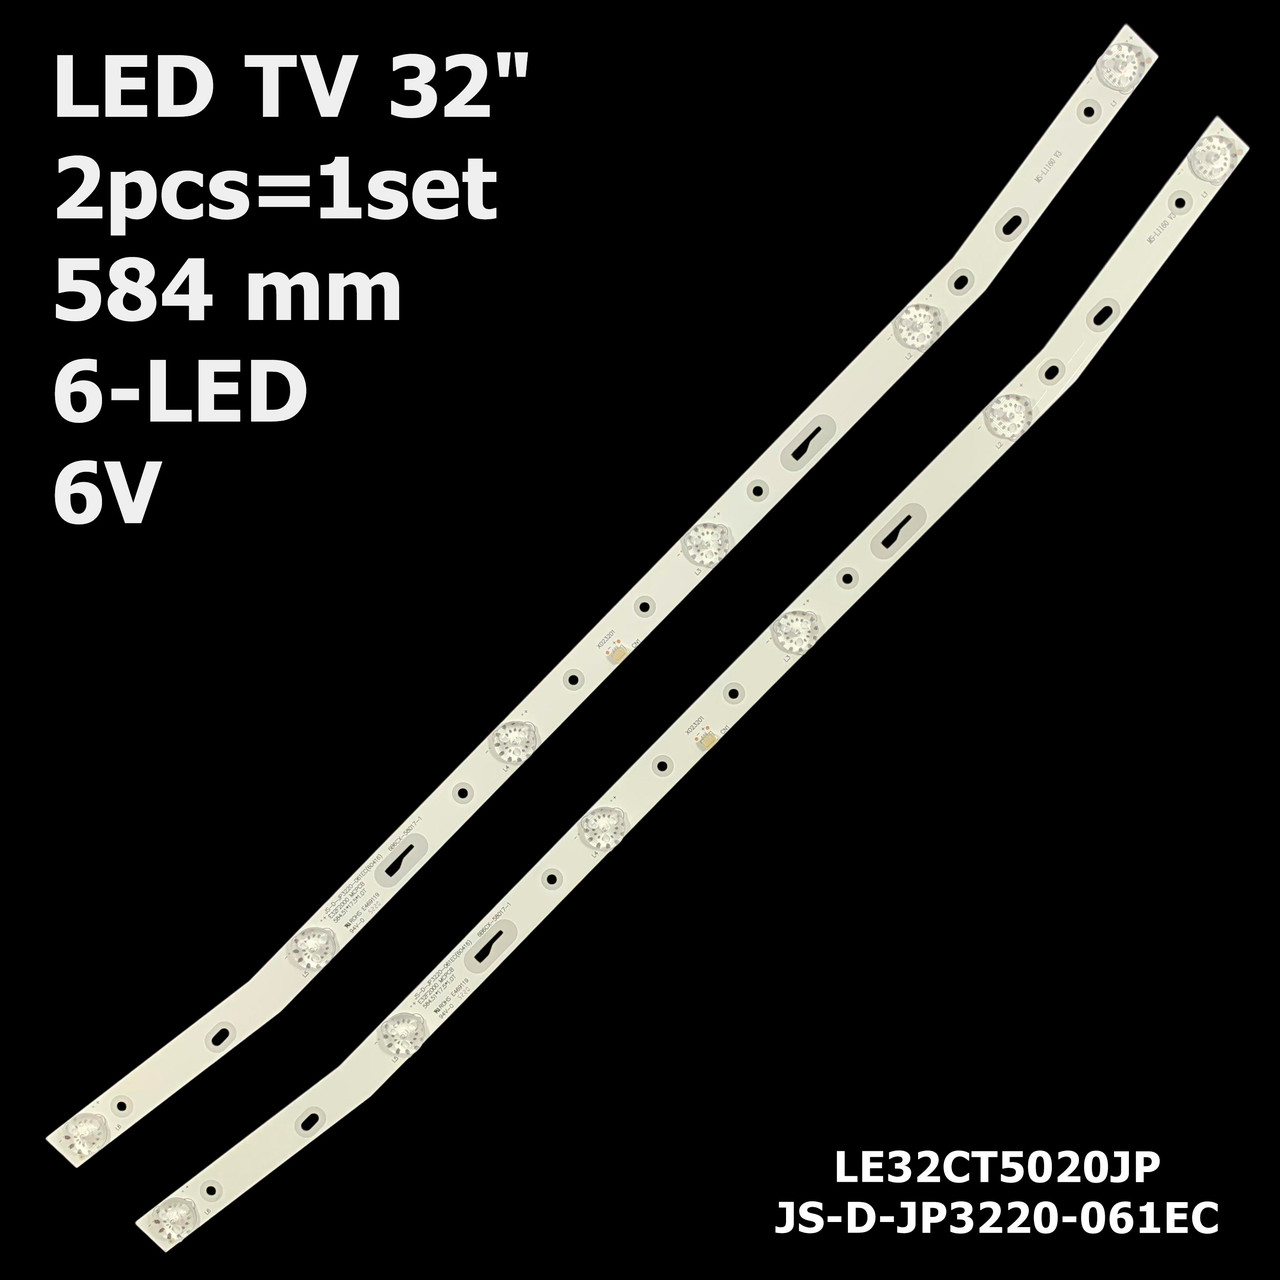 LED підсвітка TV 32" JS-D-JP3220-061EC V320BJ7-PE1 AKAI E32F2000 LED32HD340 AKTV3212 AKTV3216 AKTV322 1шт.